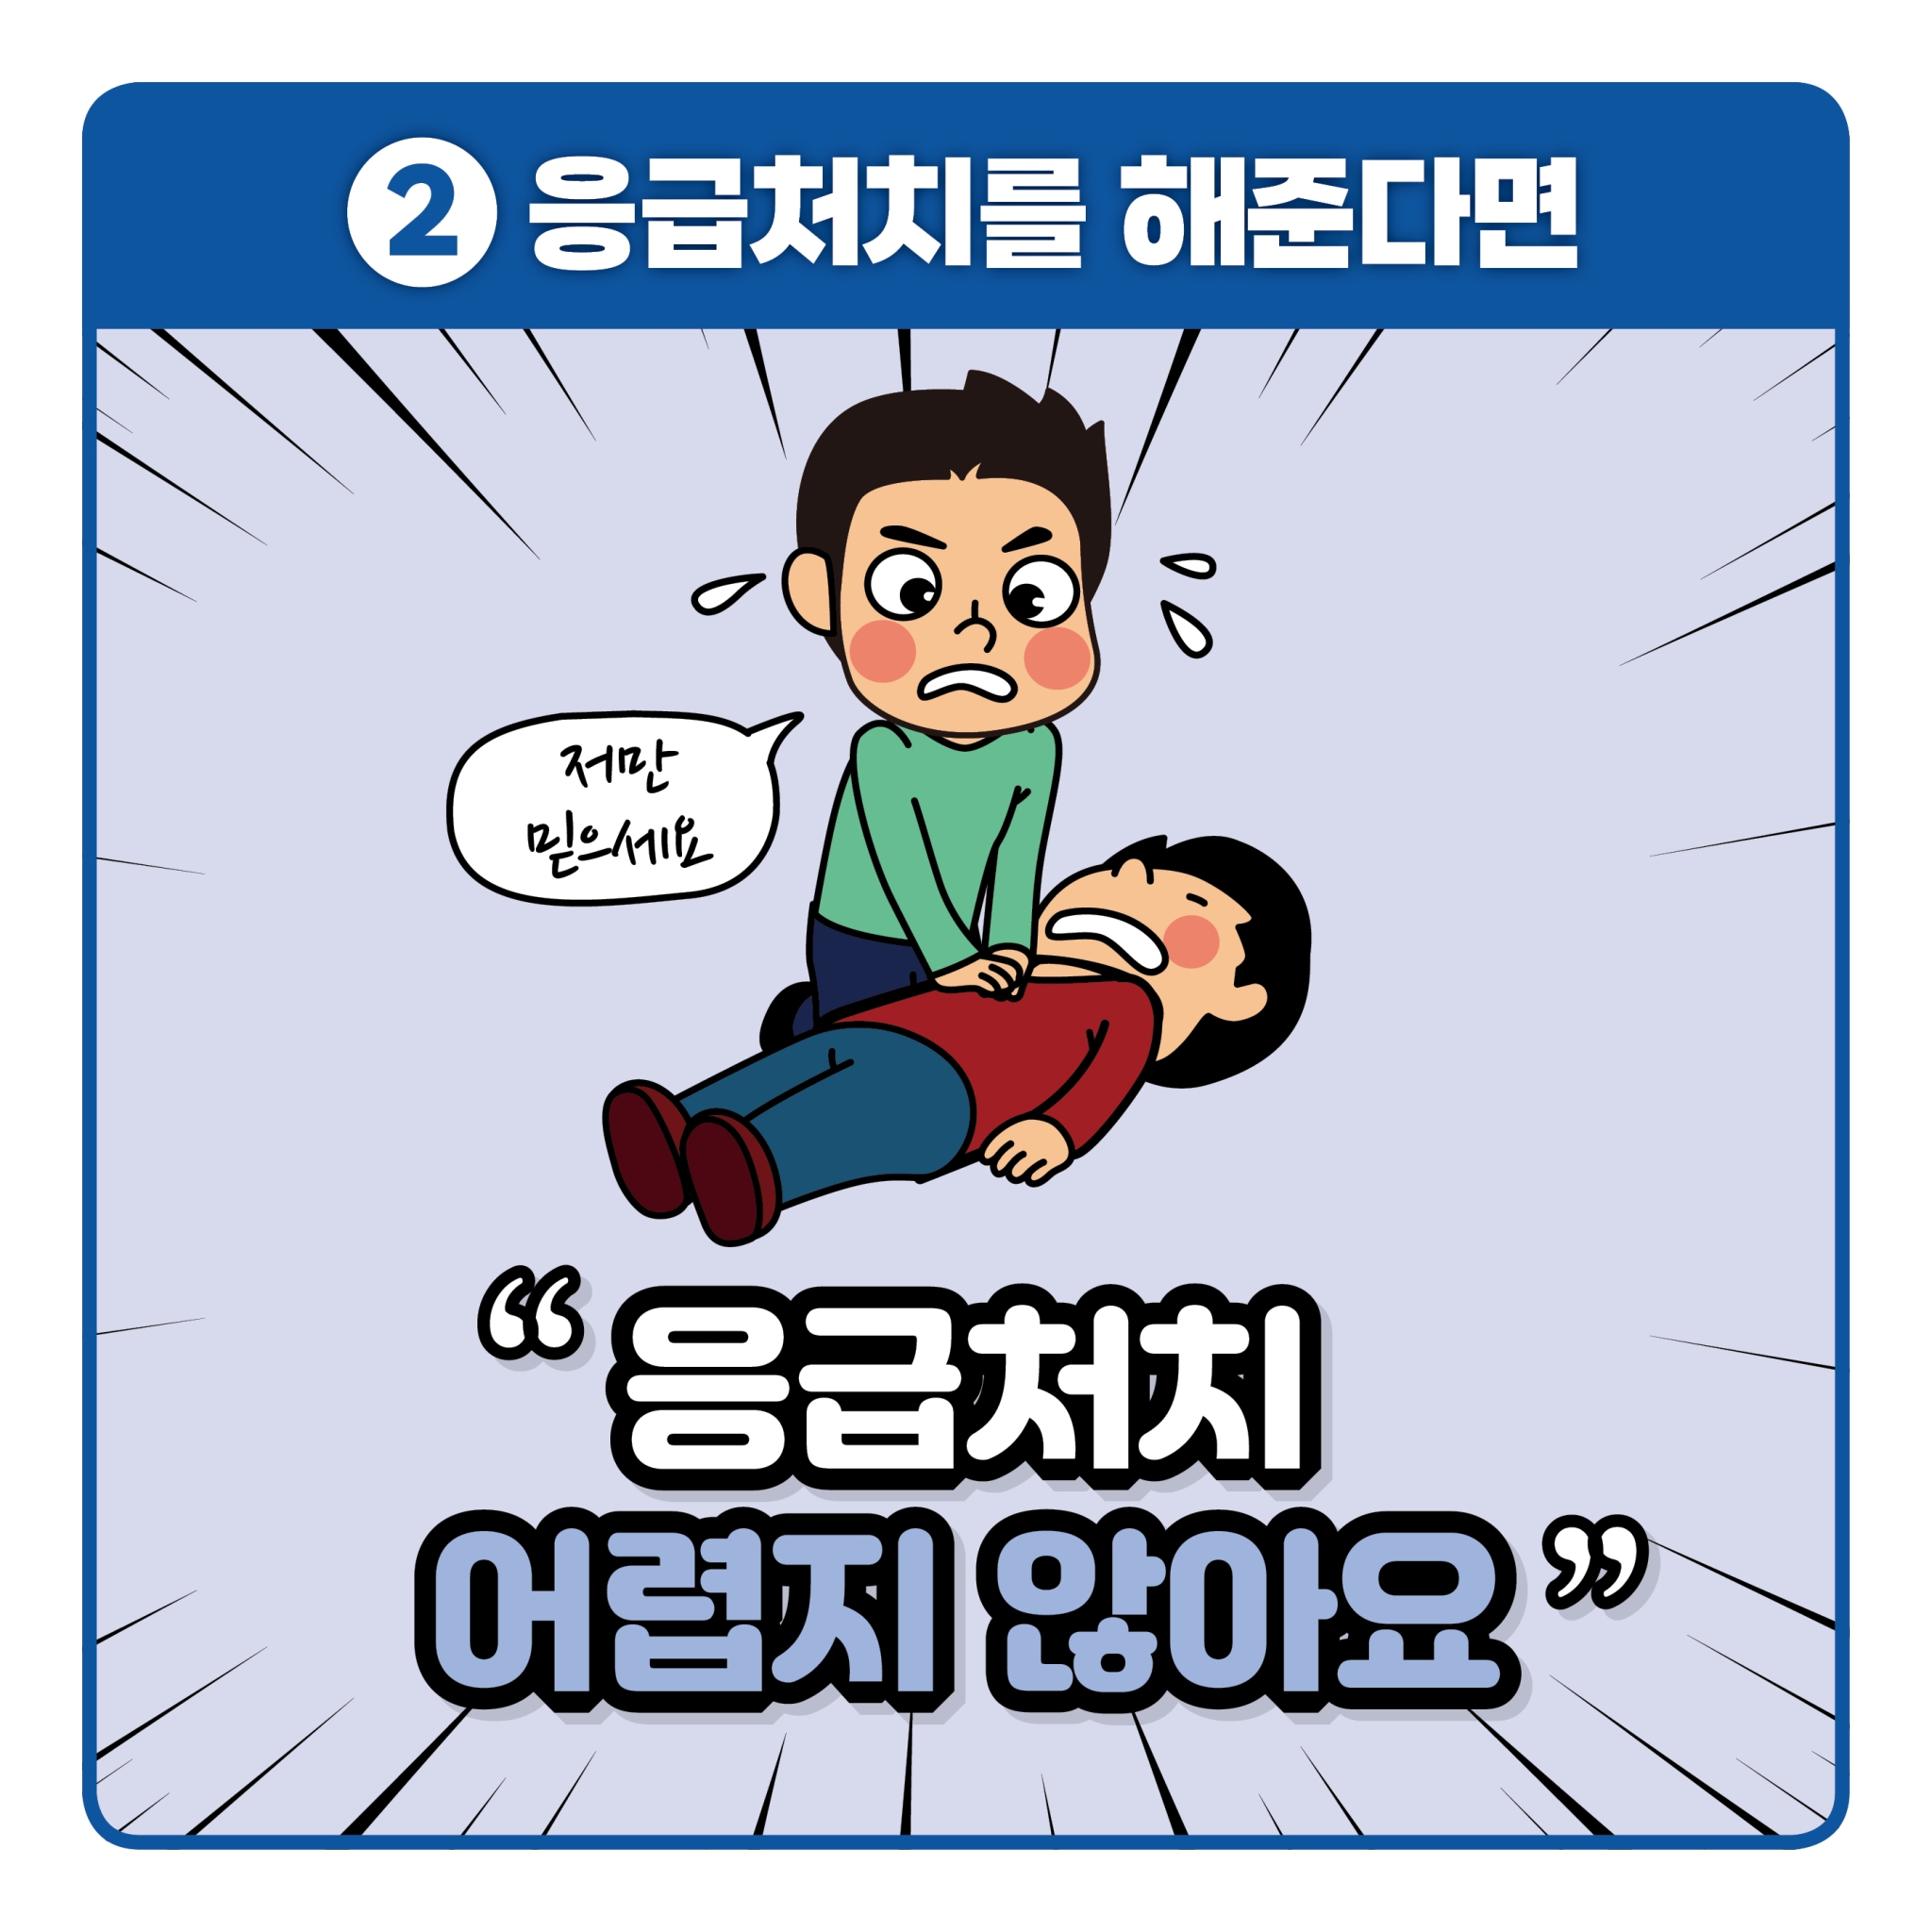 119 응급처치영상 공모전 카드뉴스(파랑)_3